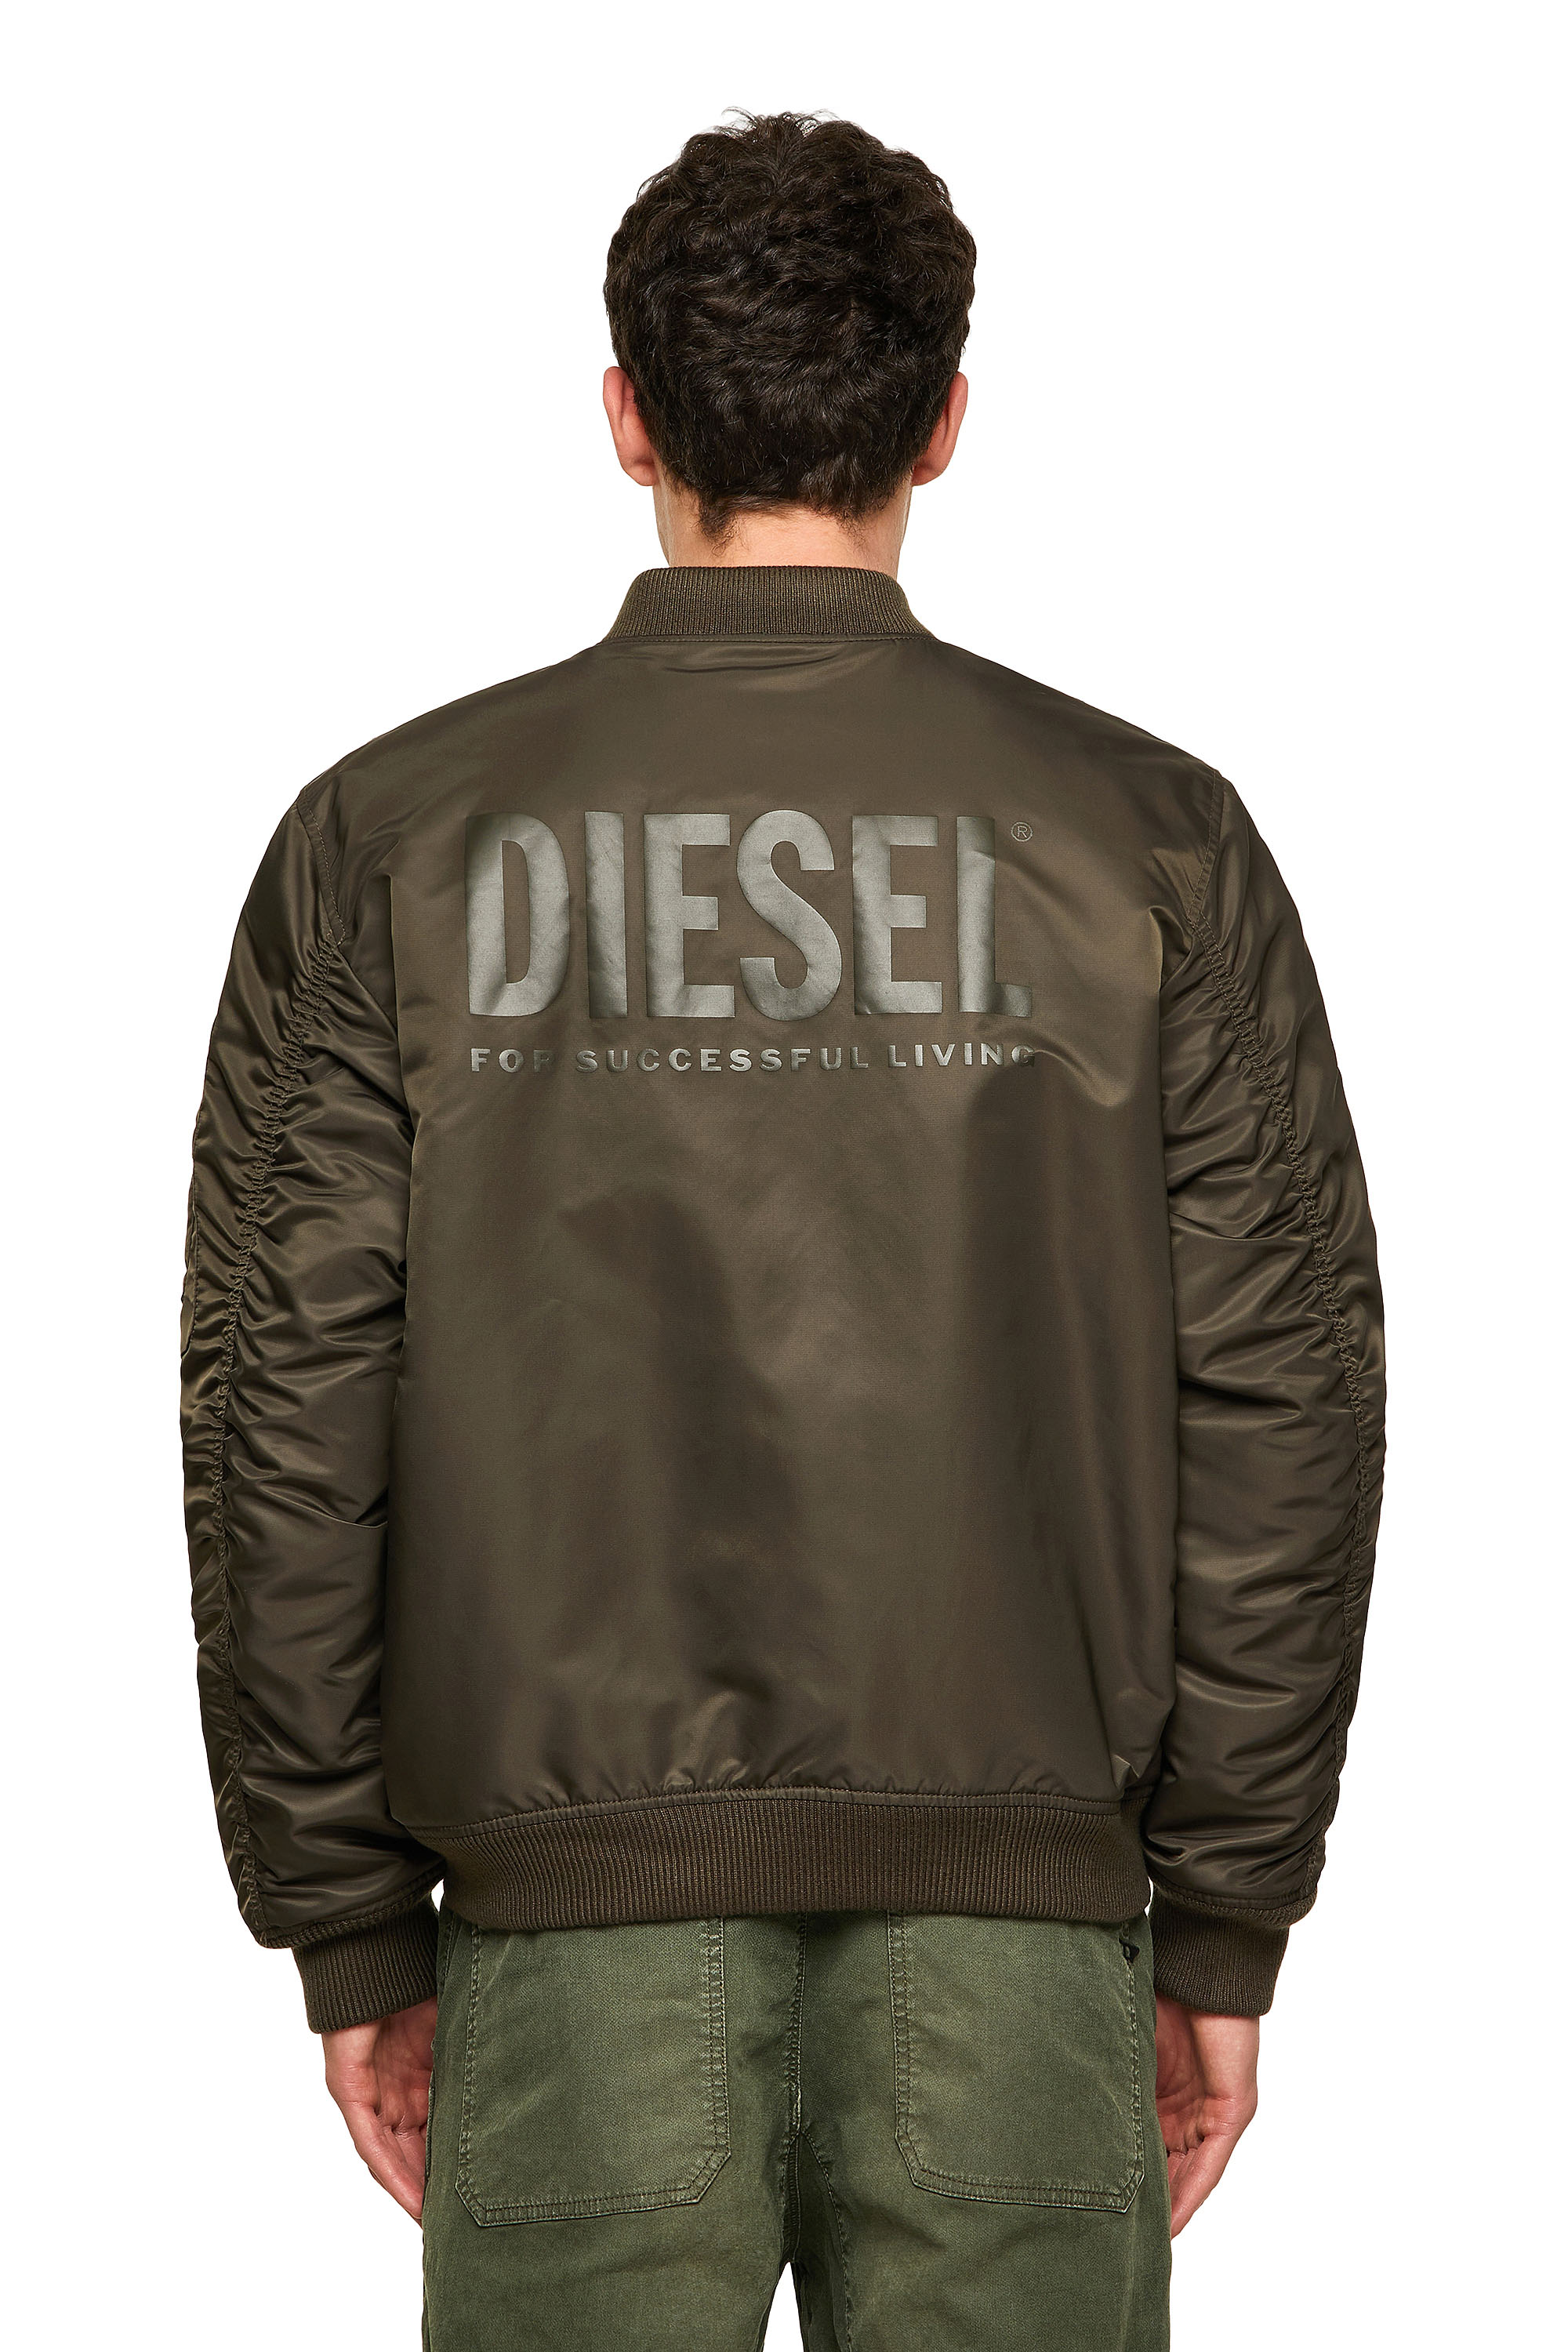 Diesel - J-ROSS-REV-A, Olive Green - Image 3